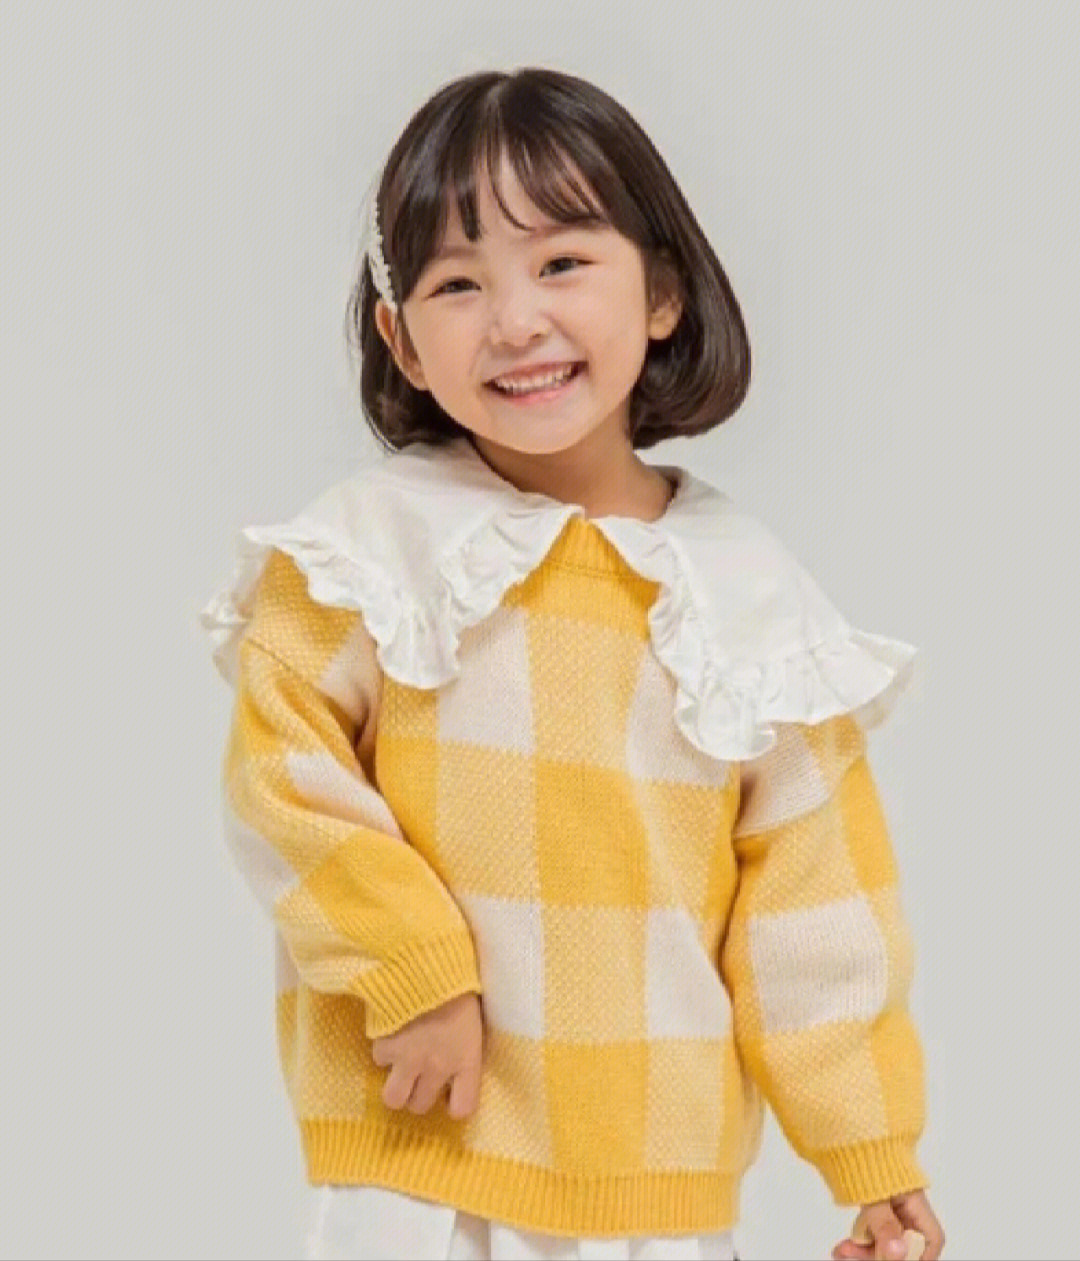 日式小女孩发型图片